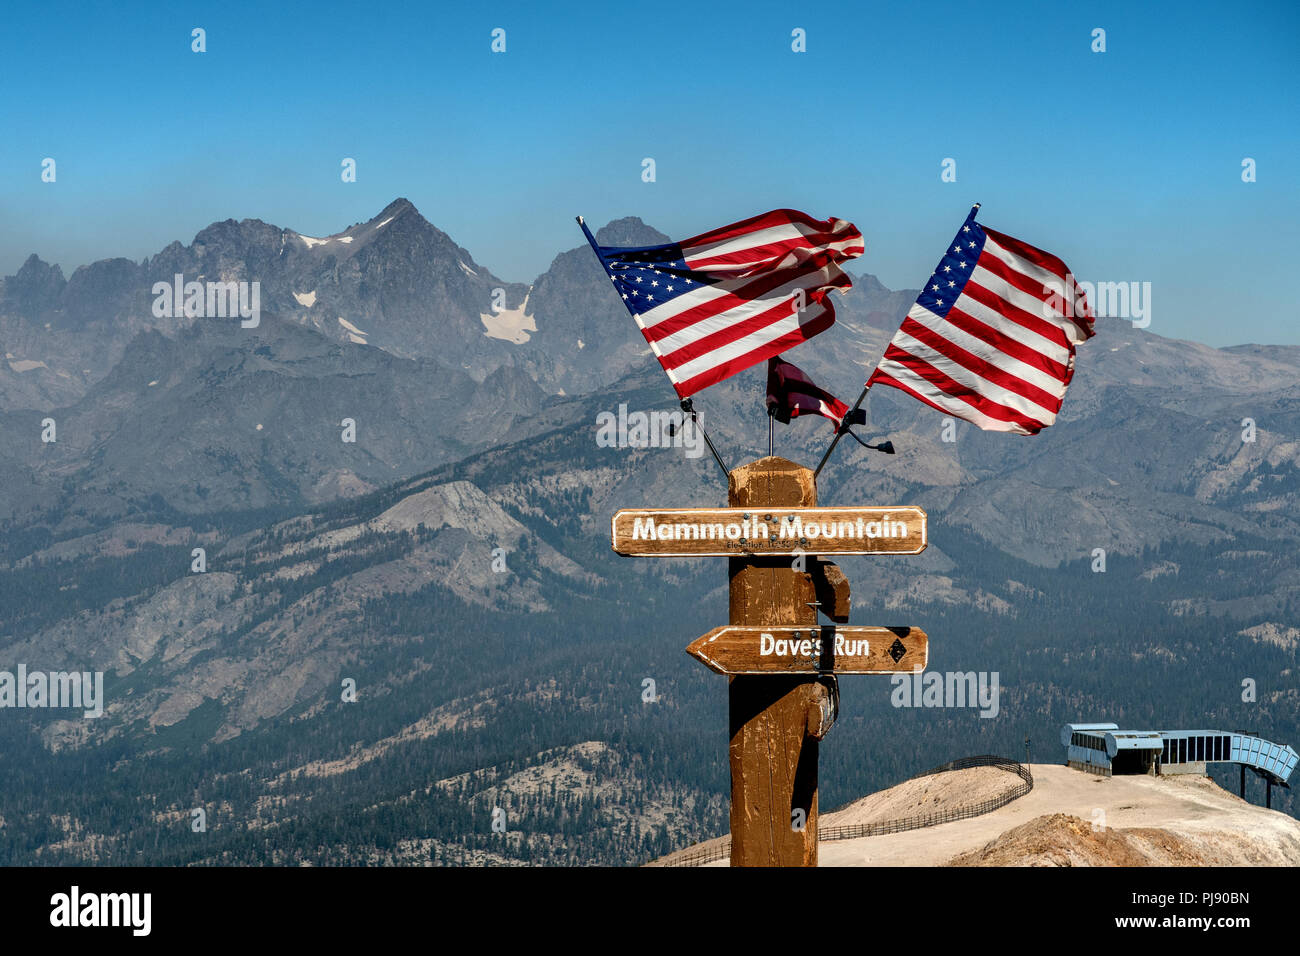 Des drapeaux américains sur un post au sommet de Mammoth Mountain en Californie. Banque D'Images